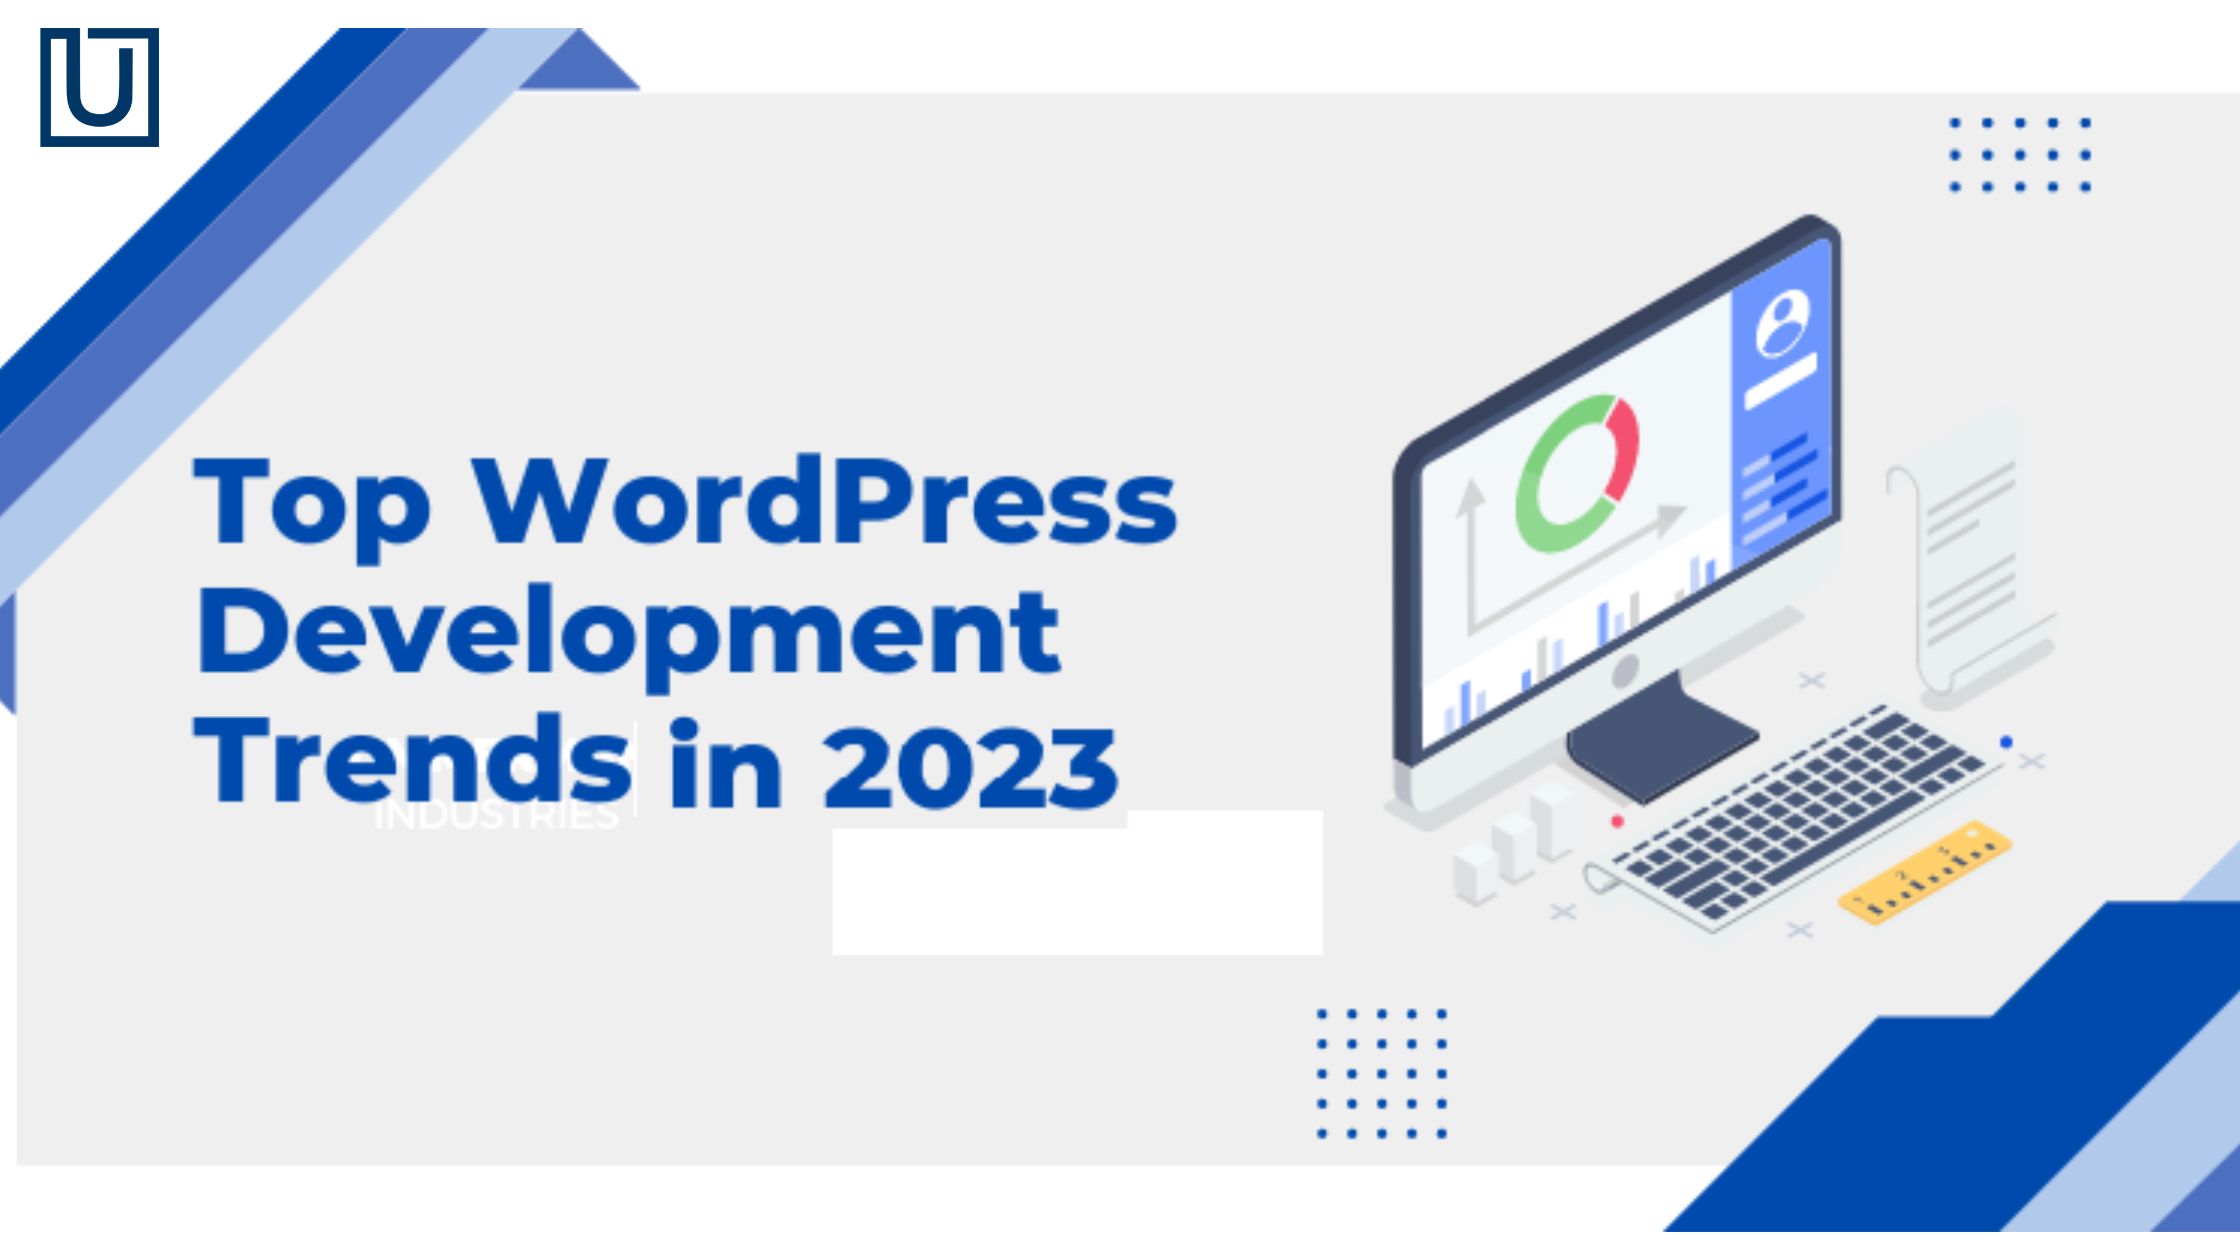 Top WordPress Development Trends in 2023